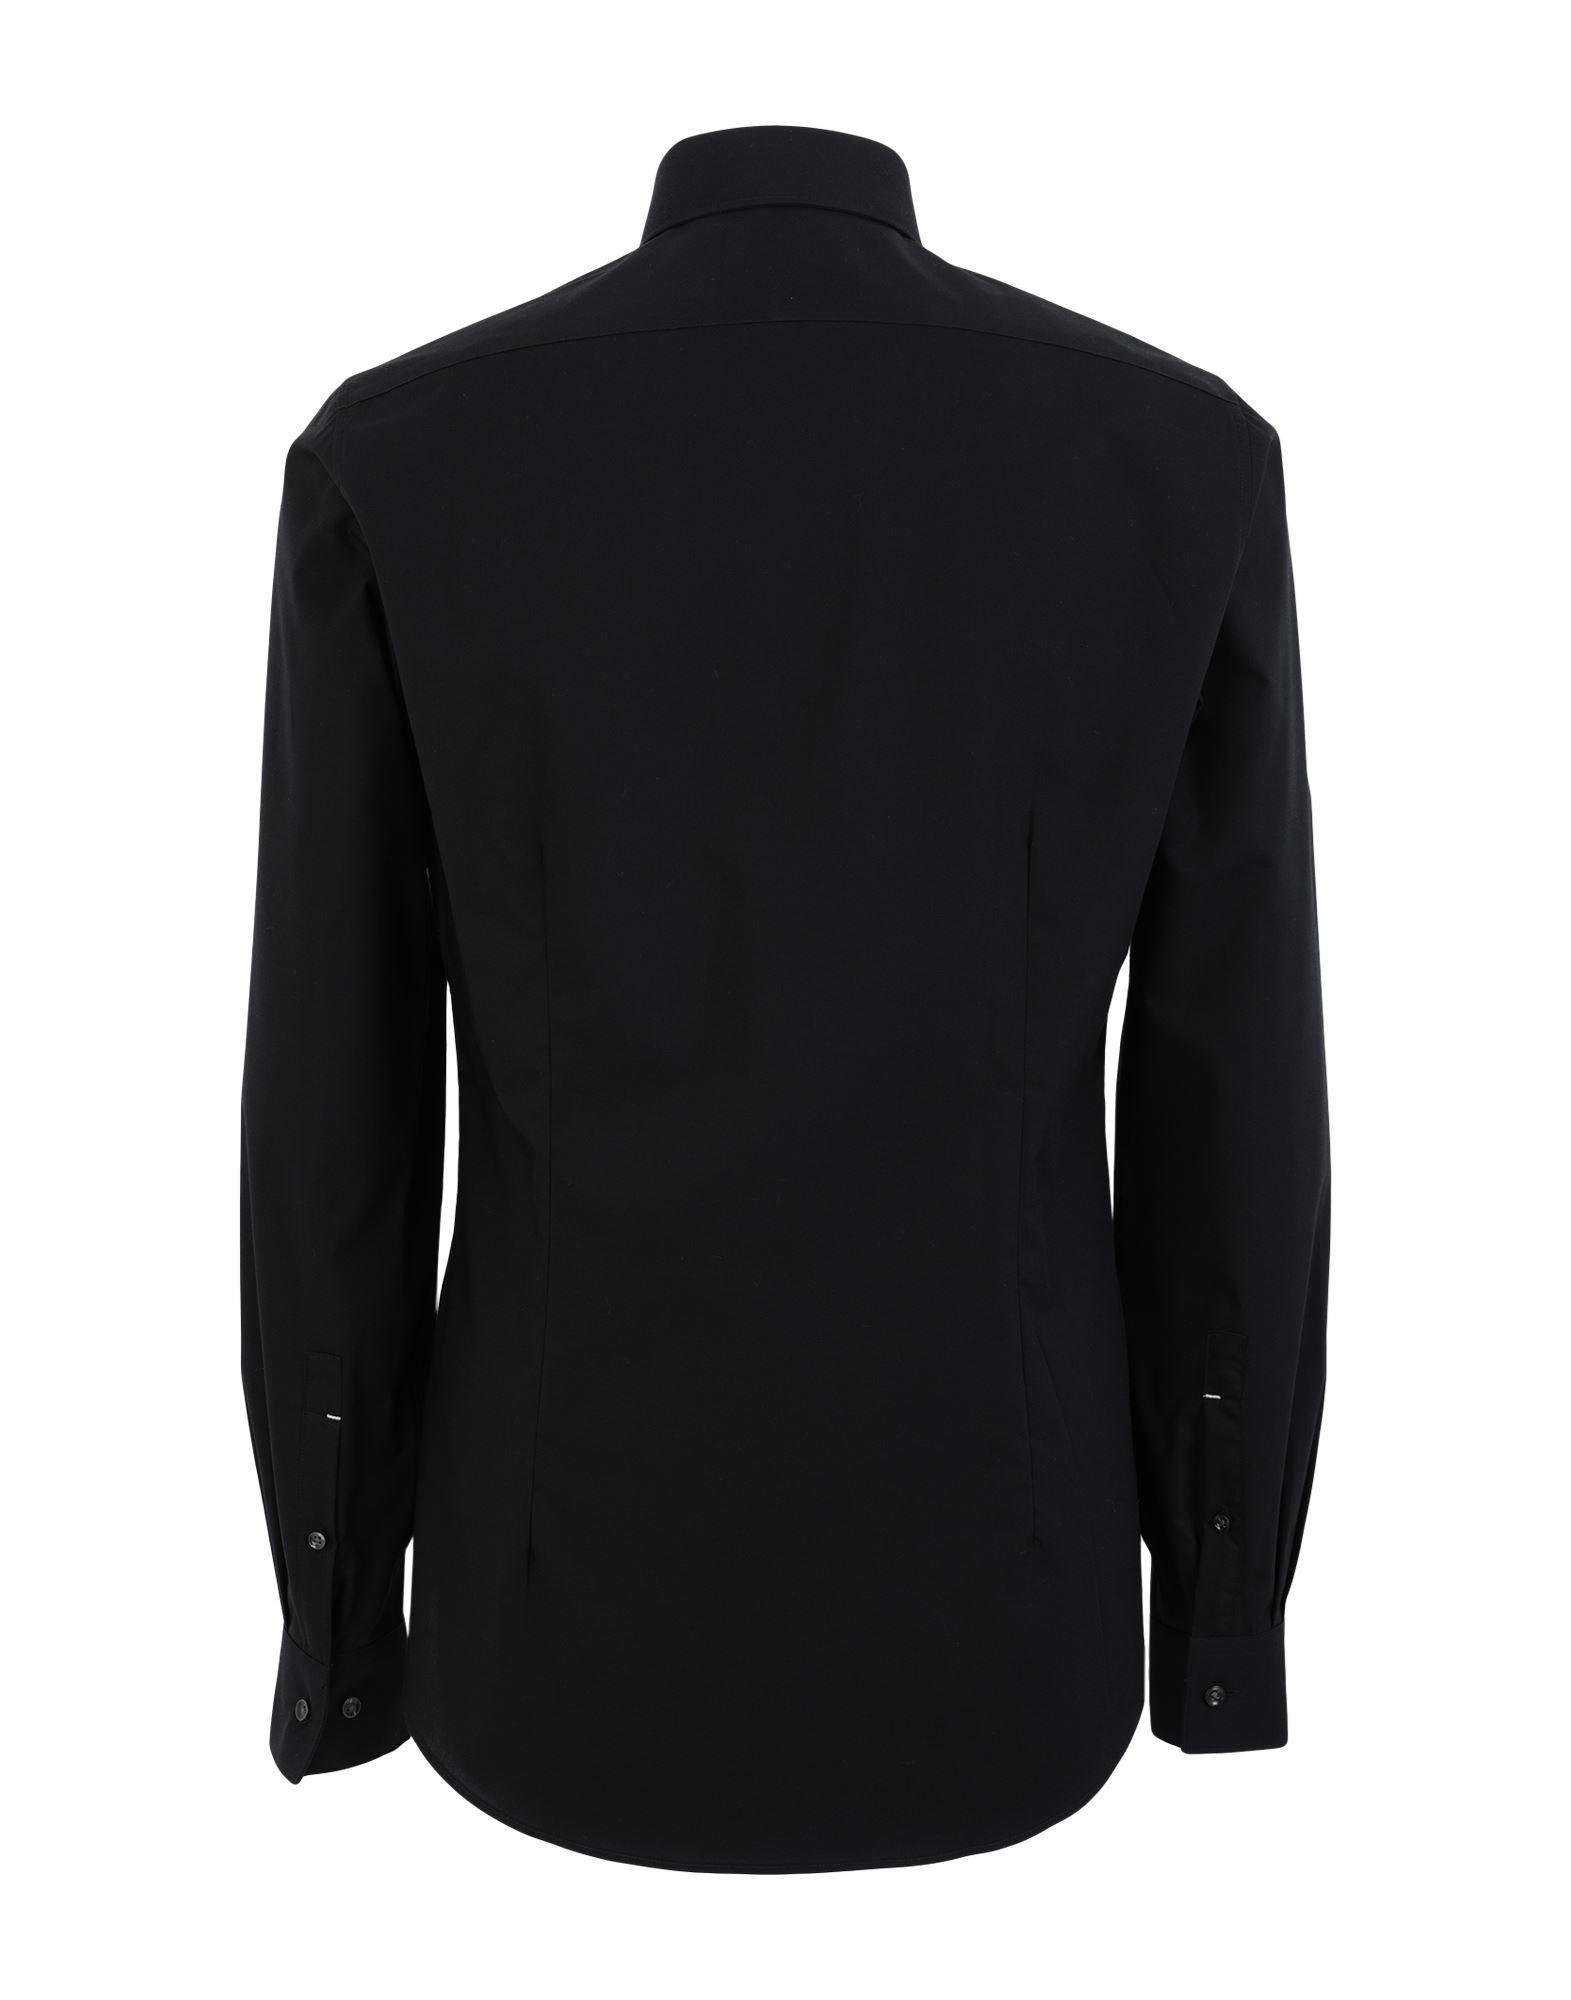 Michael Kors Shirt in Black for Men - Lyst